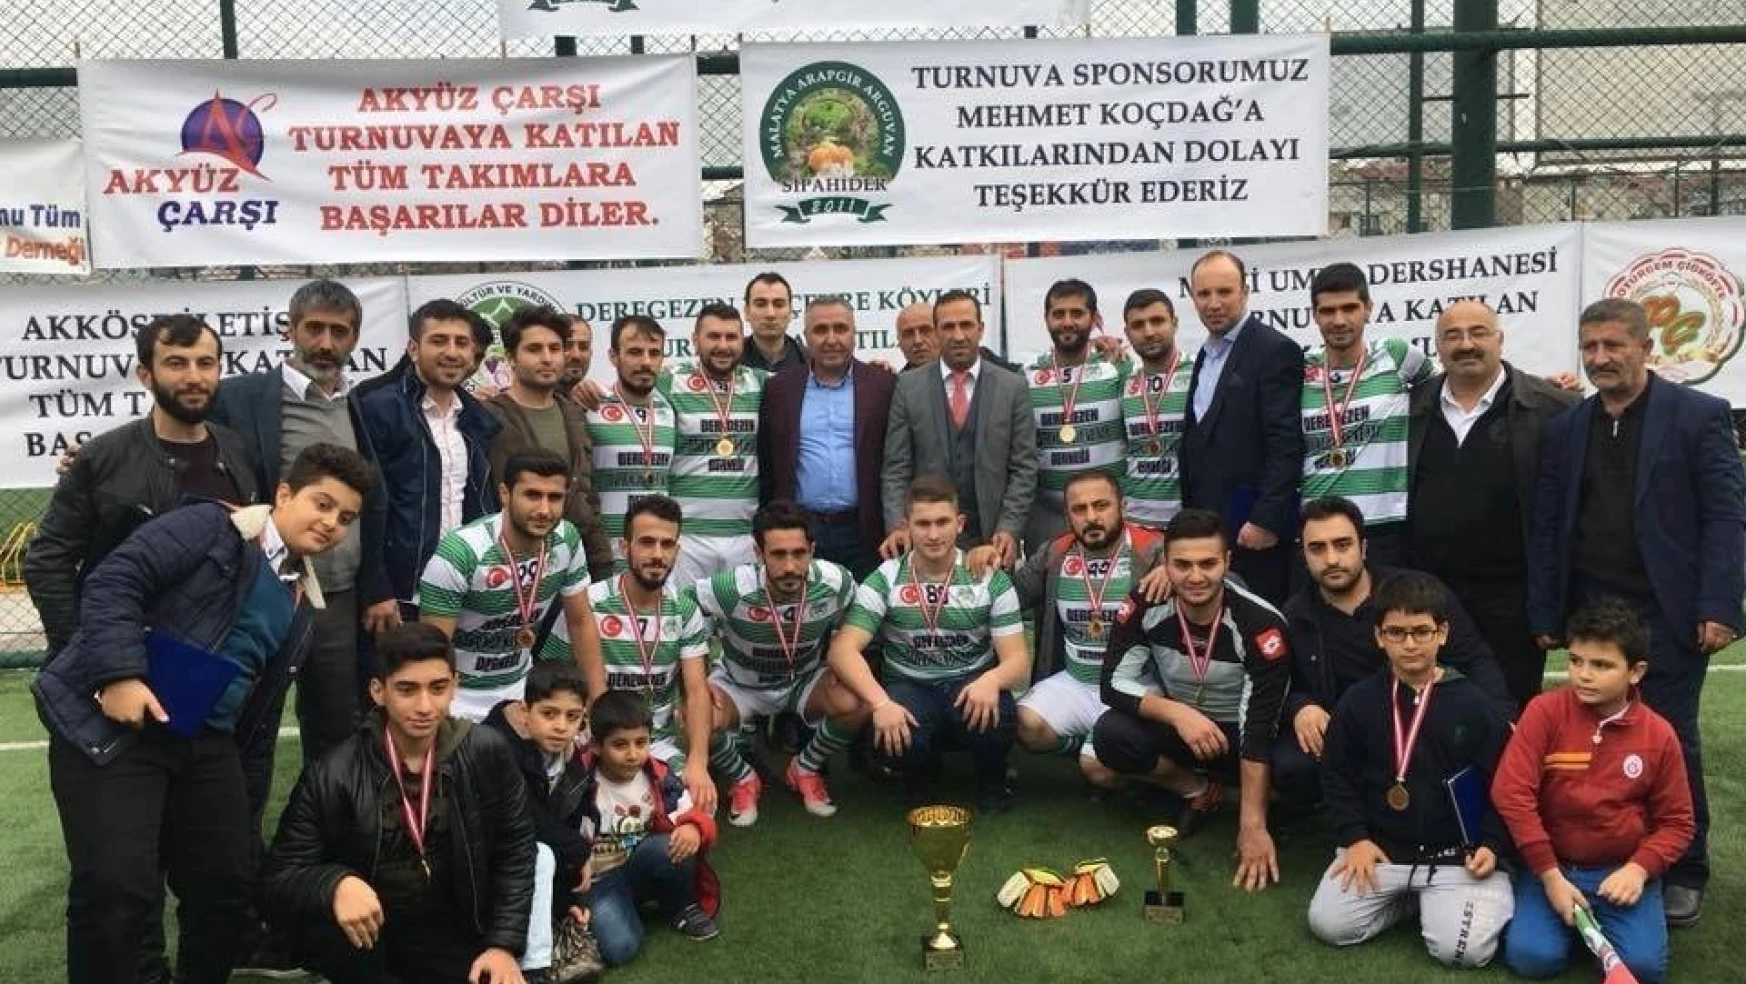 Arapgir SİPAHİDER Futbol Turnuvası sona erdi
